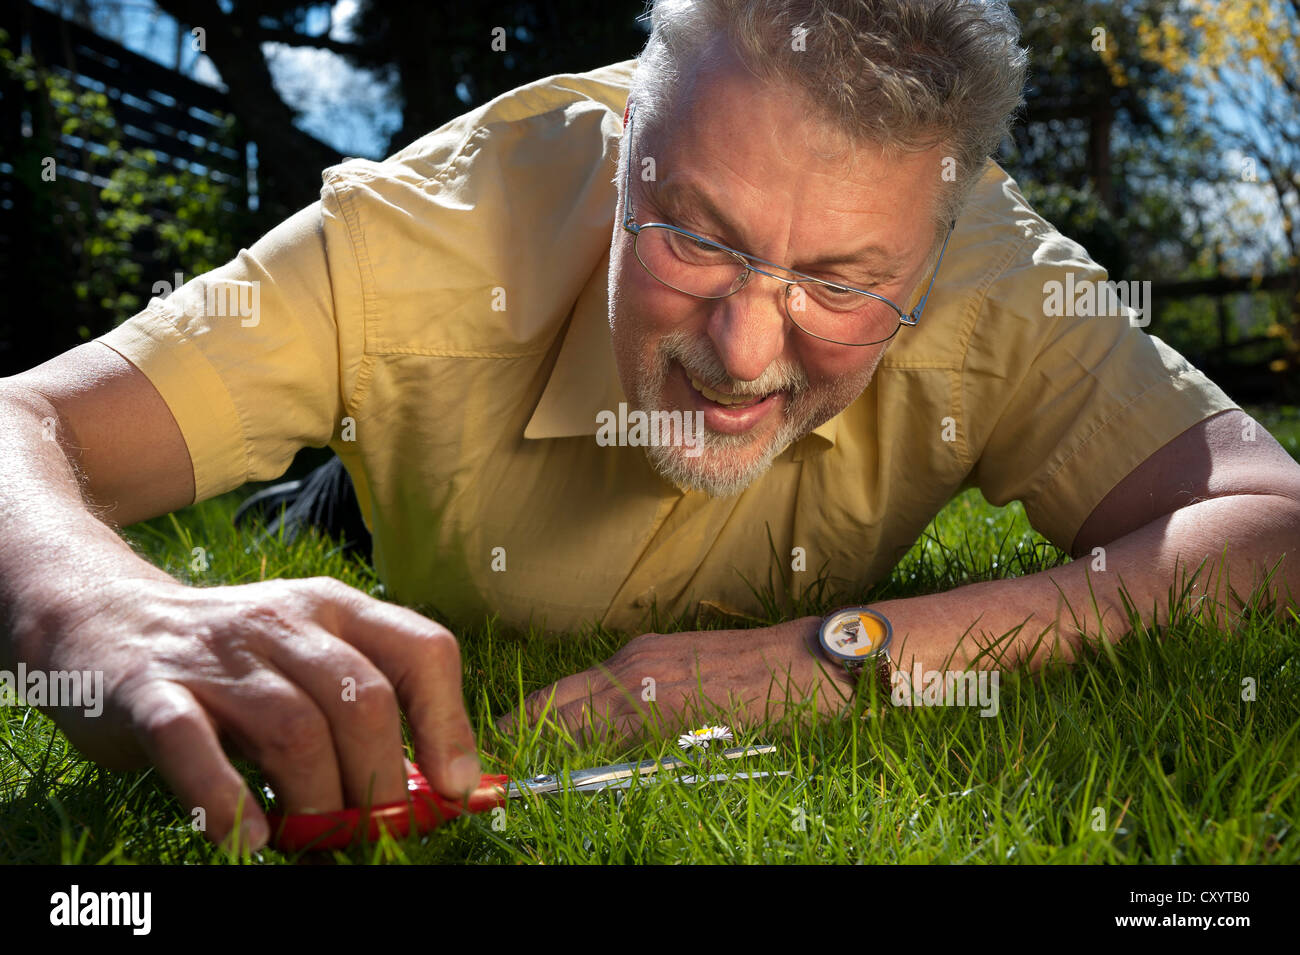 Mann liegt auf dem Rasen schneiden Gänseblümchen mit einer Schere  Stockfotografie - Alamy